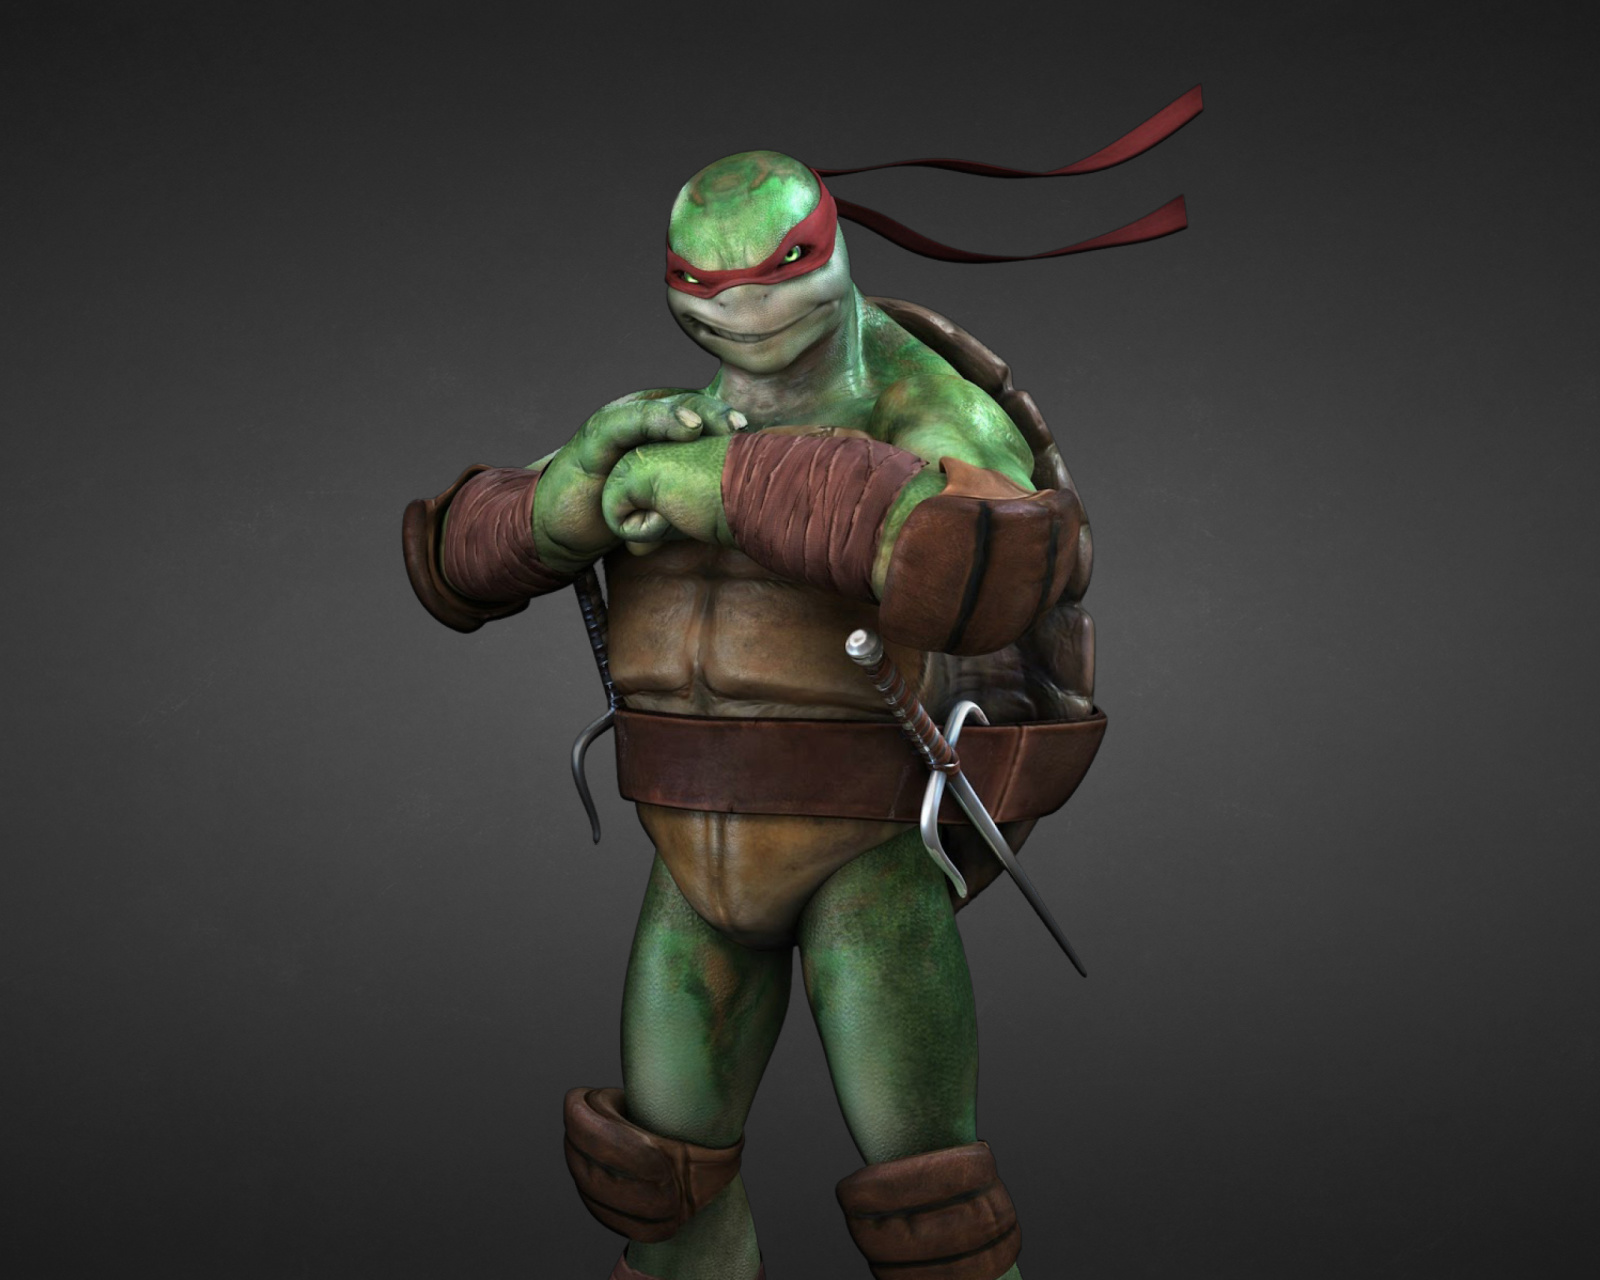 Tmnt, Teenage mutant ninja turtles screenshot #1 1600x1280